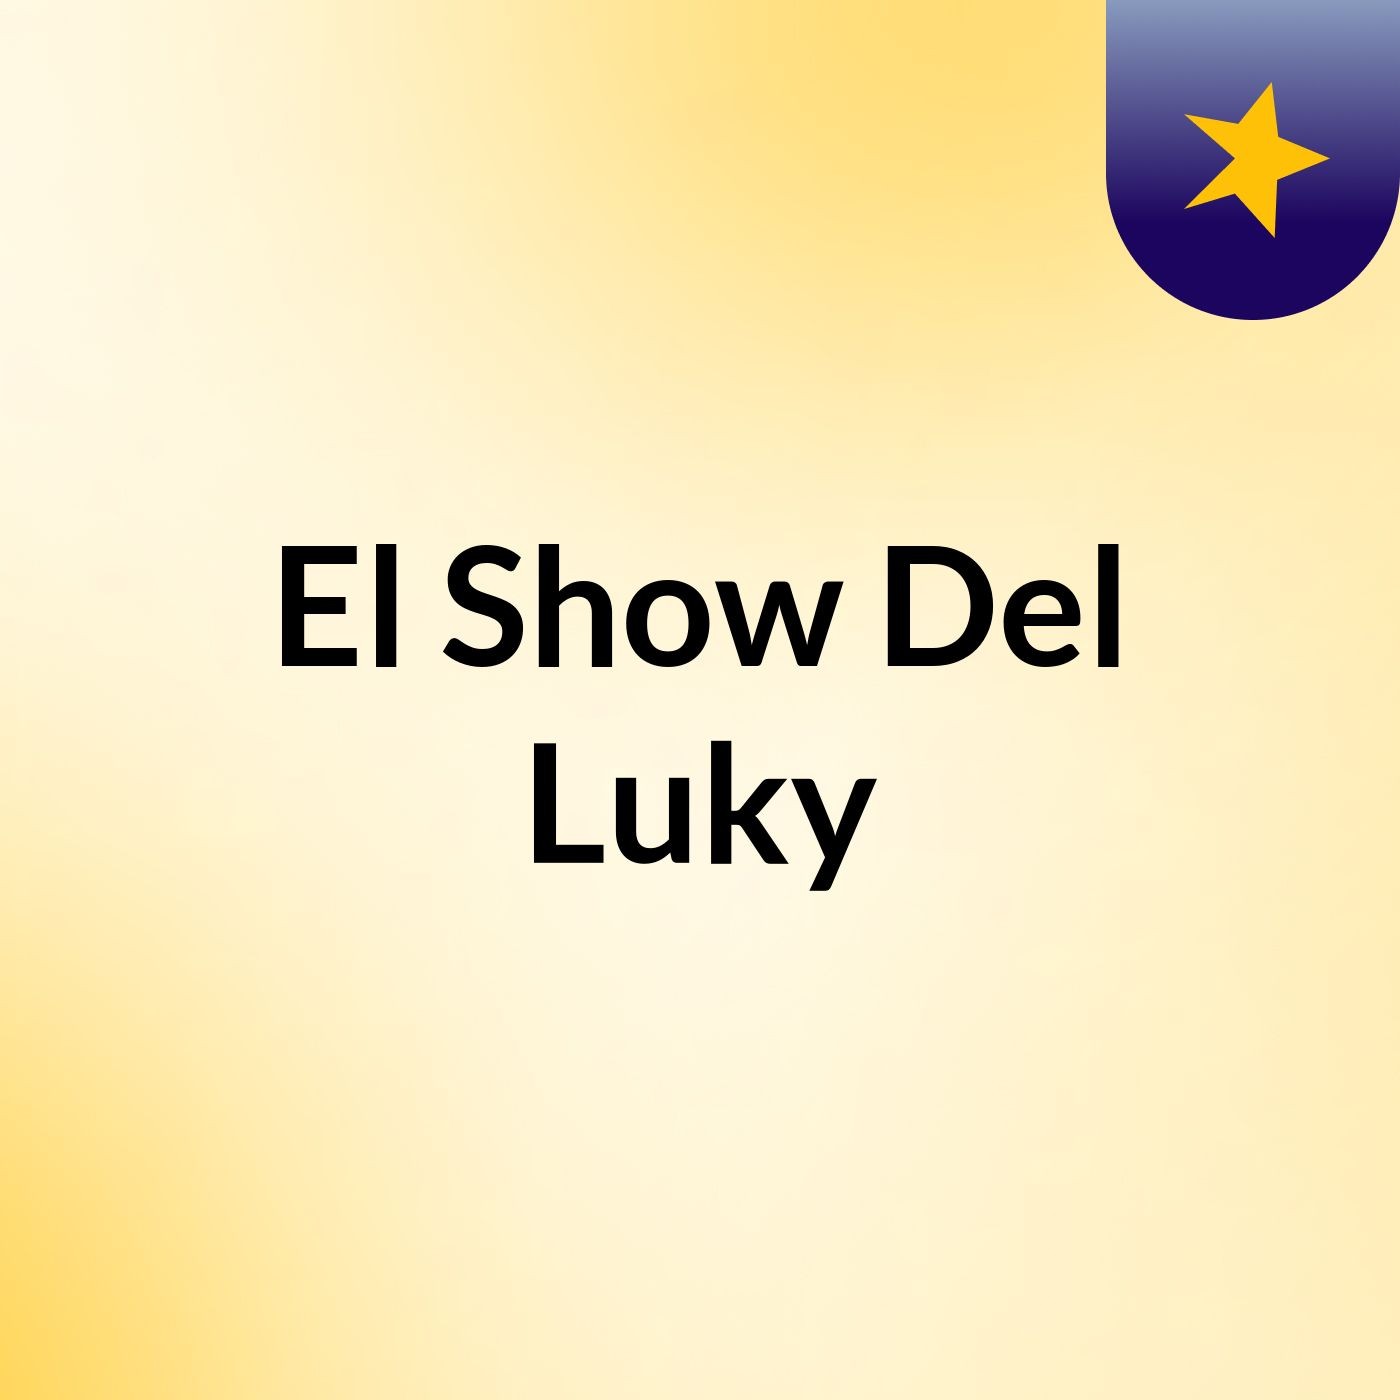 El Show Del Luky